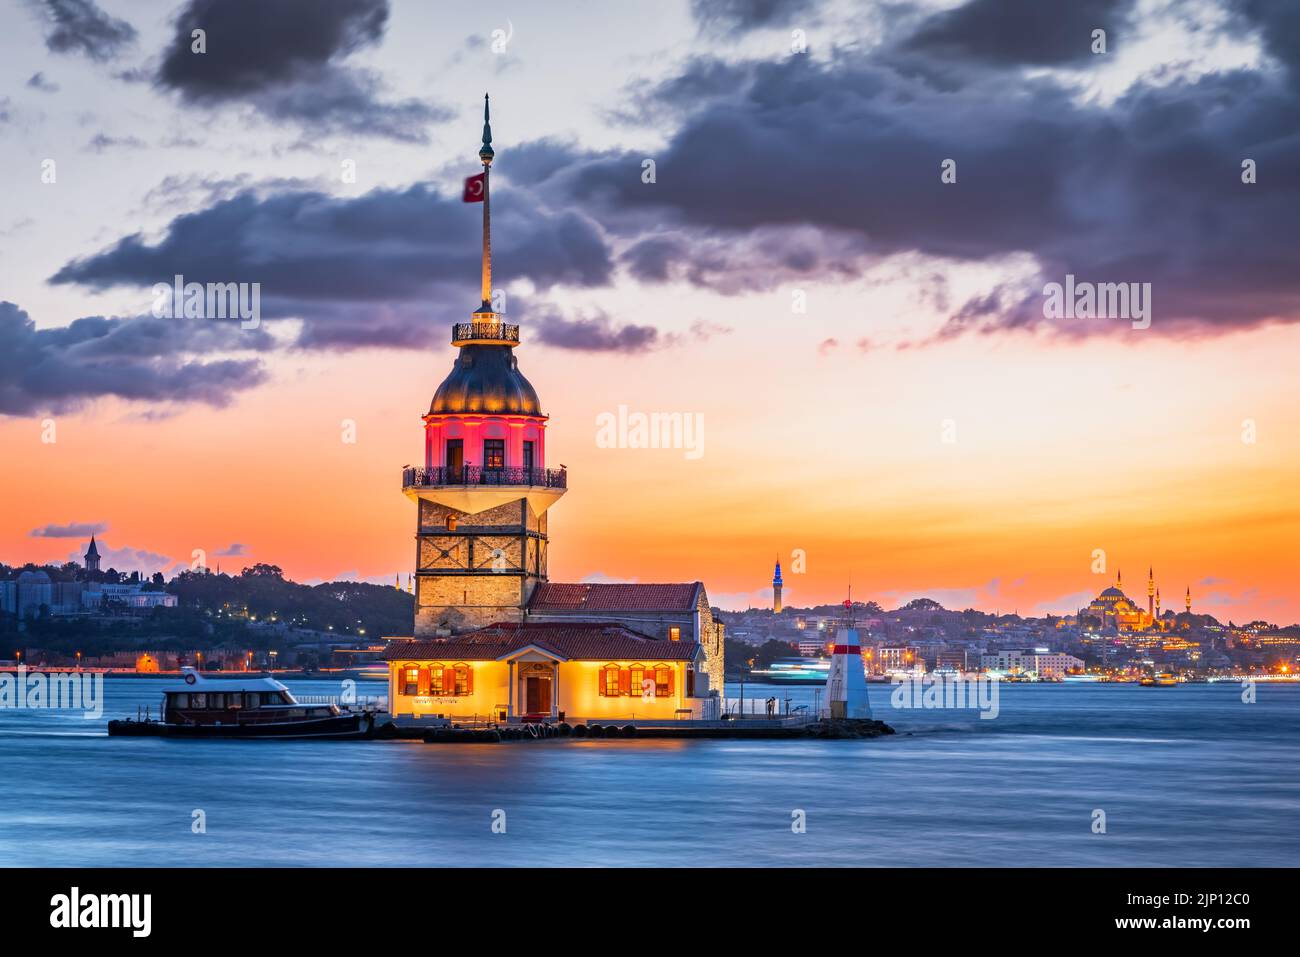 Estambul, Turquía. Puesta de sol escénica de colores en el Bósforo con el famoso Kiz Kulesi, Torre Maiden. Paisaje turco de fondo de viaje. Foto de stock